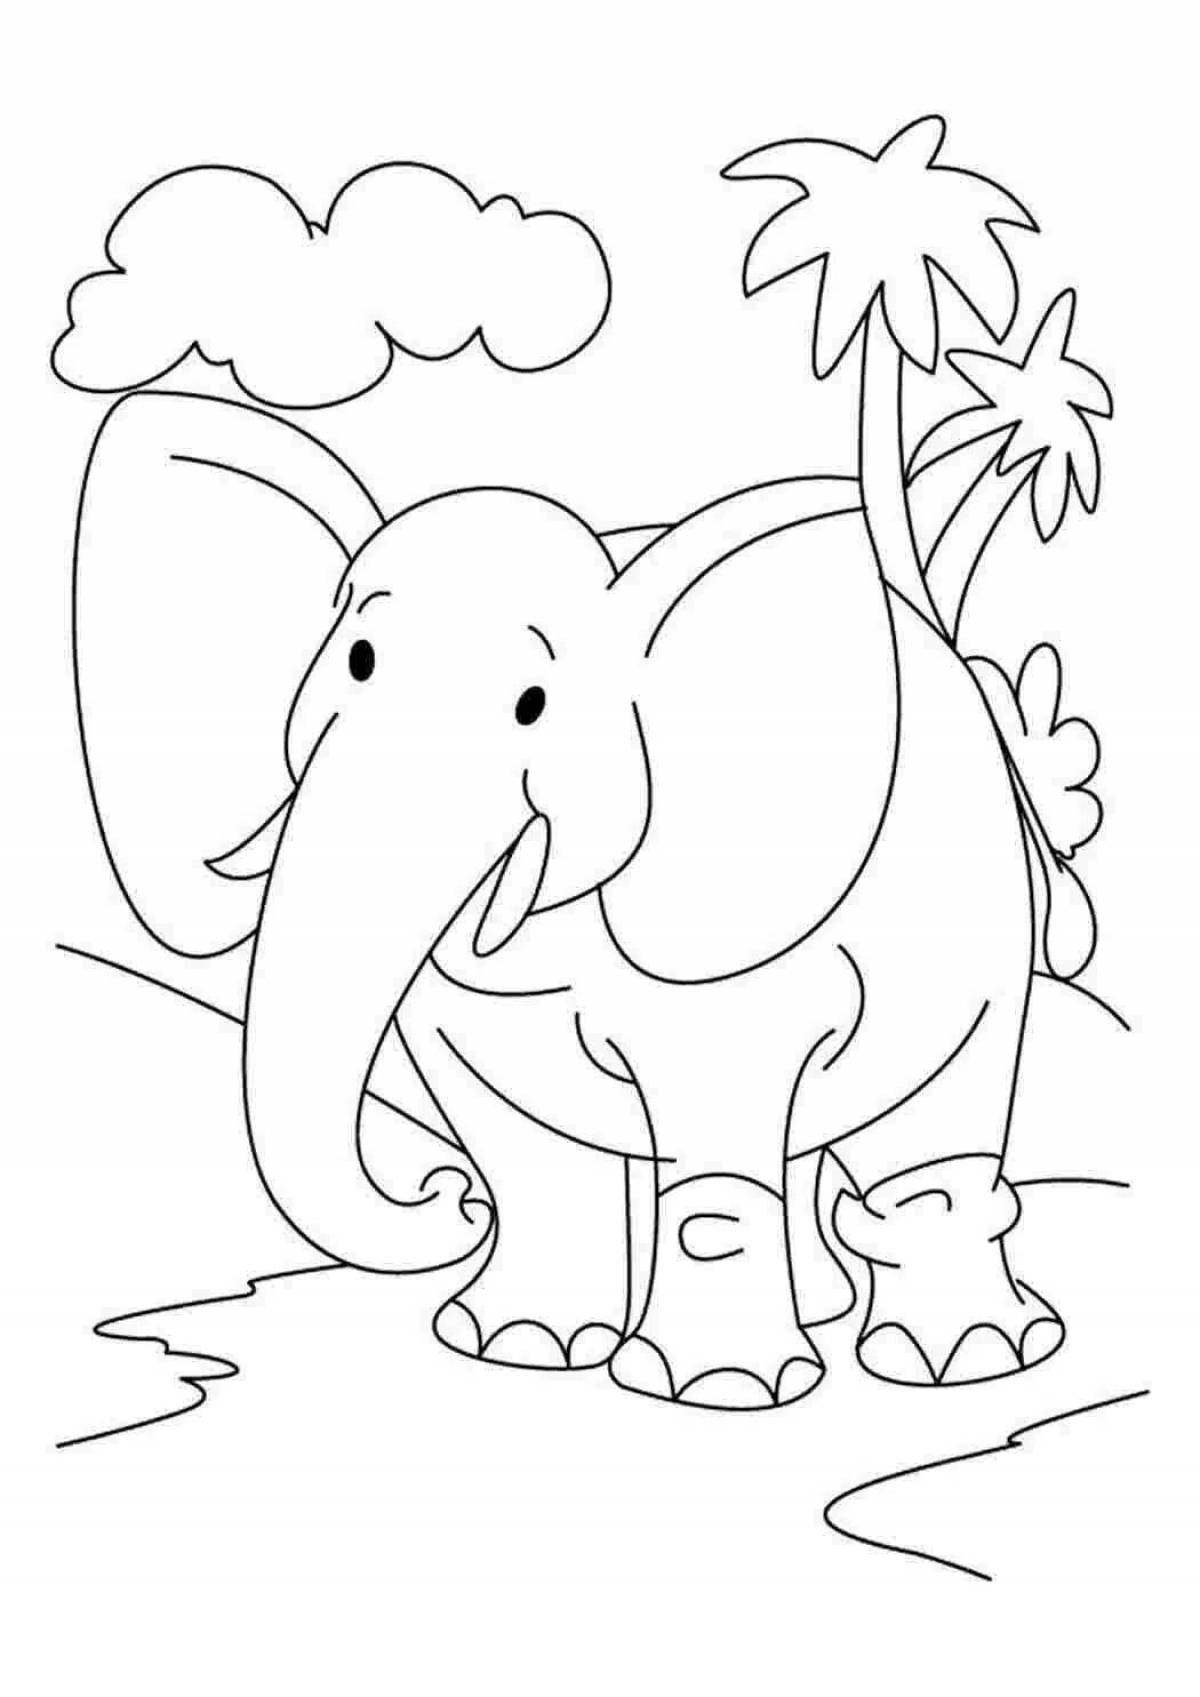 Захватывающая раскраска слонов для детей